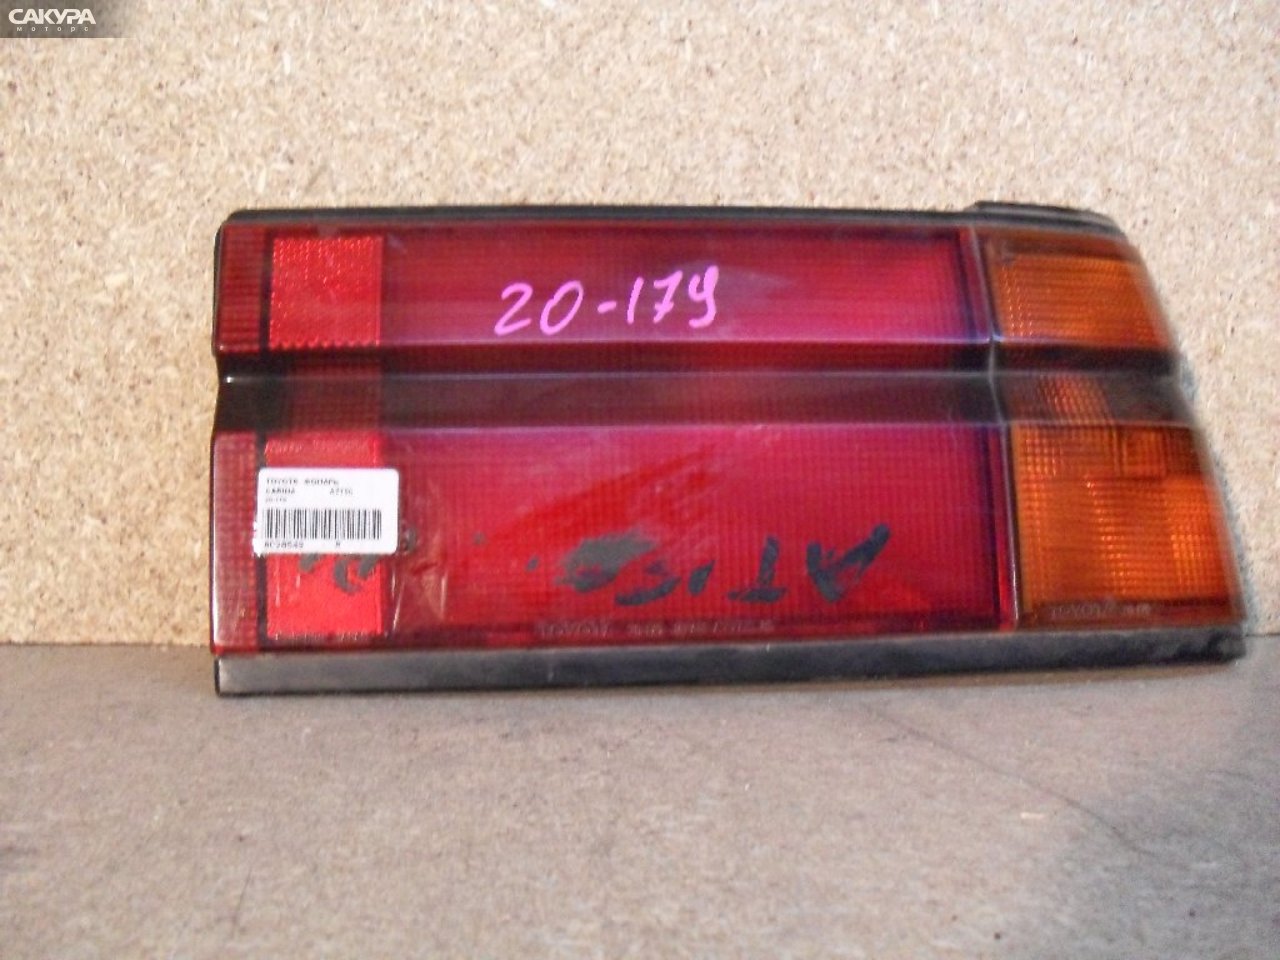 Фонарь стоп-сигнала правый Toyota Carina AT150 20-179: купить в Сакура Абакан.